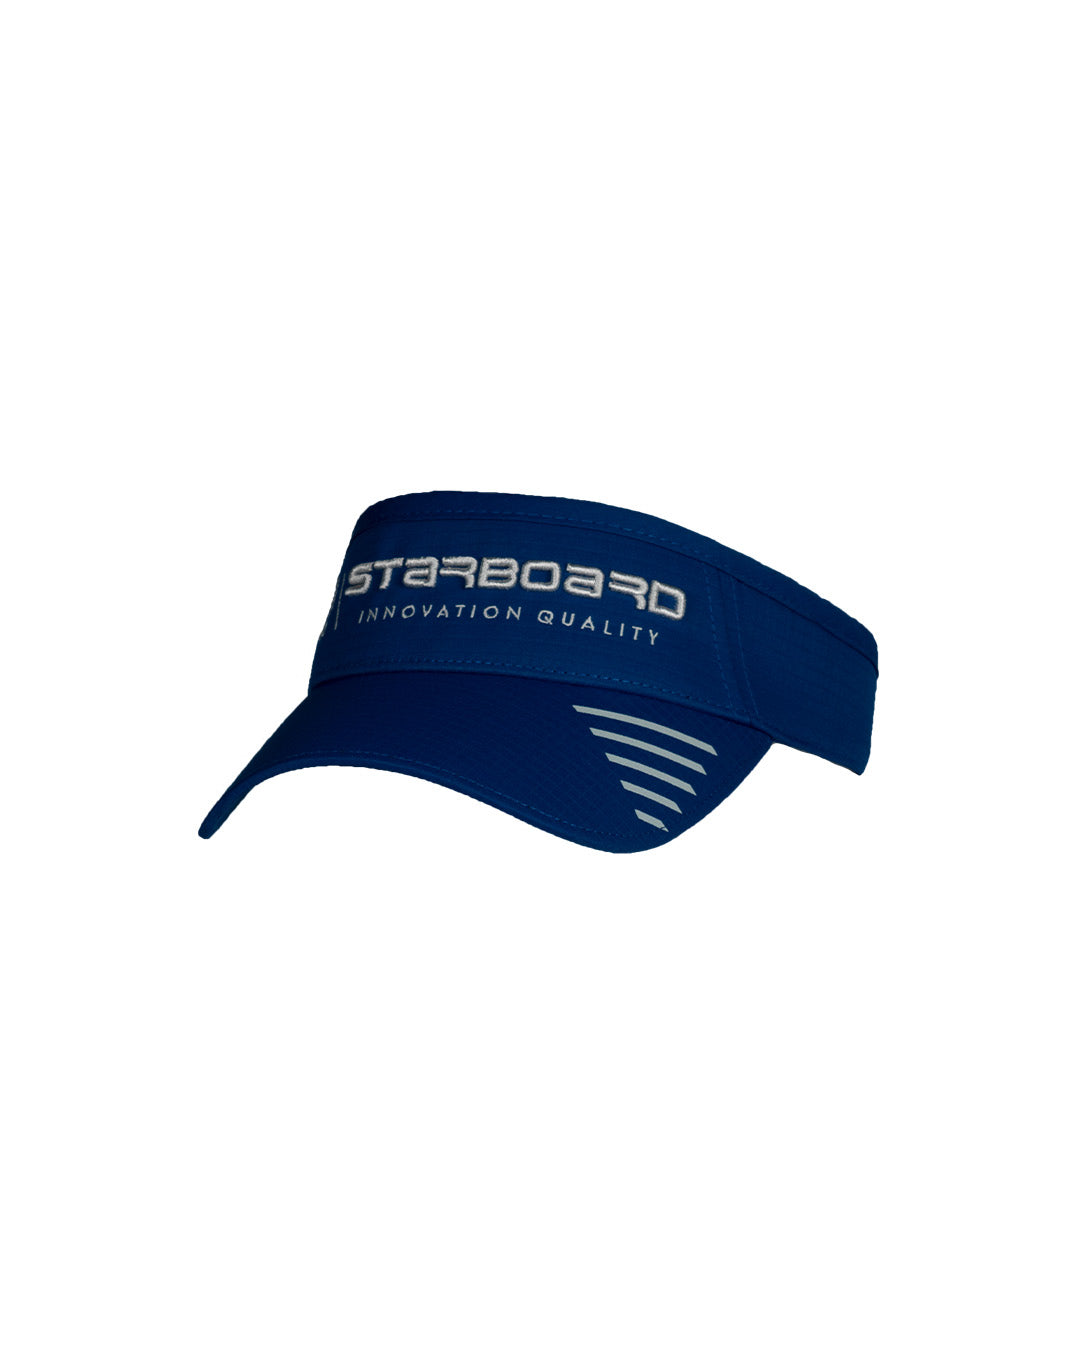 Starboard Performance Visor – Team Blue